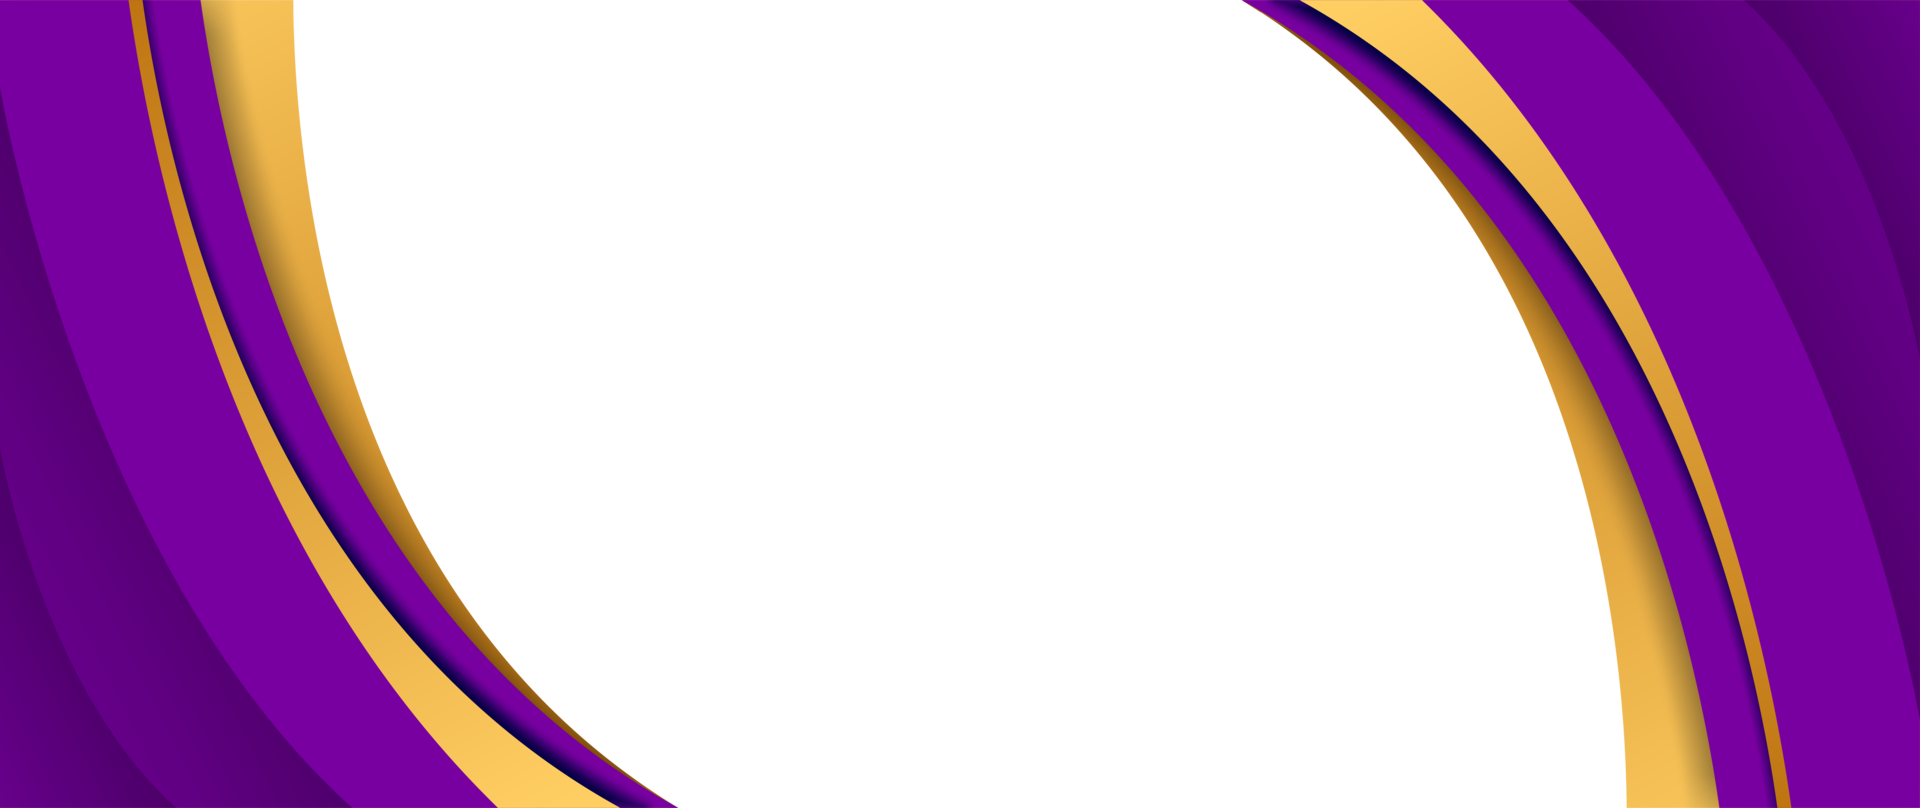 purple frame banner background transparent border design png